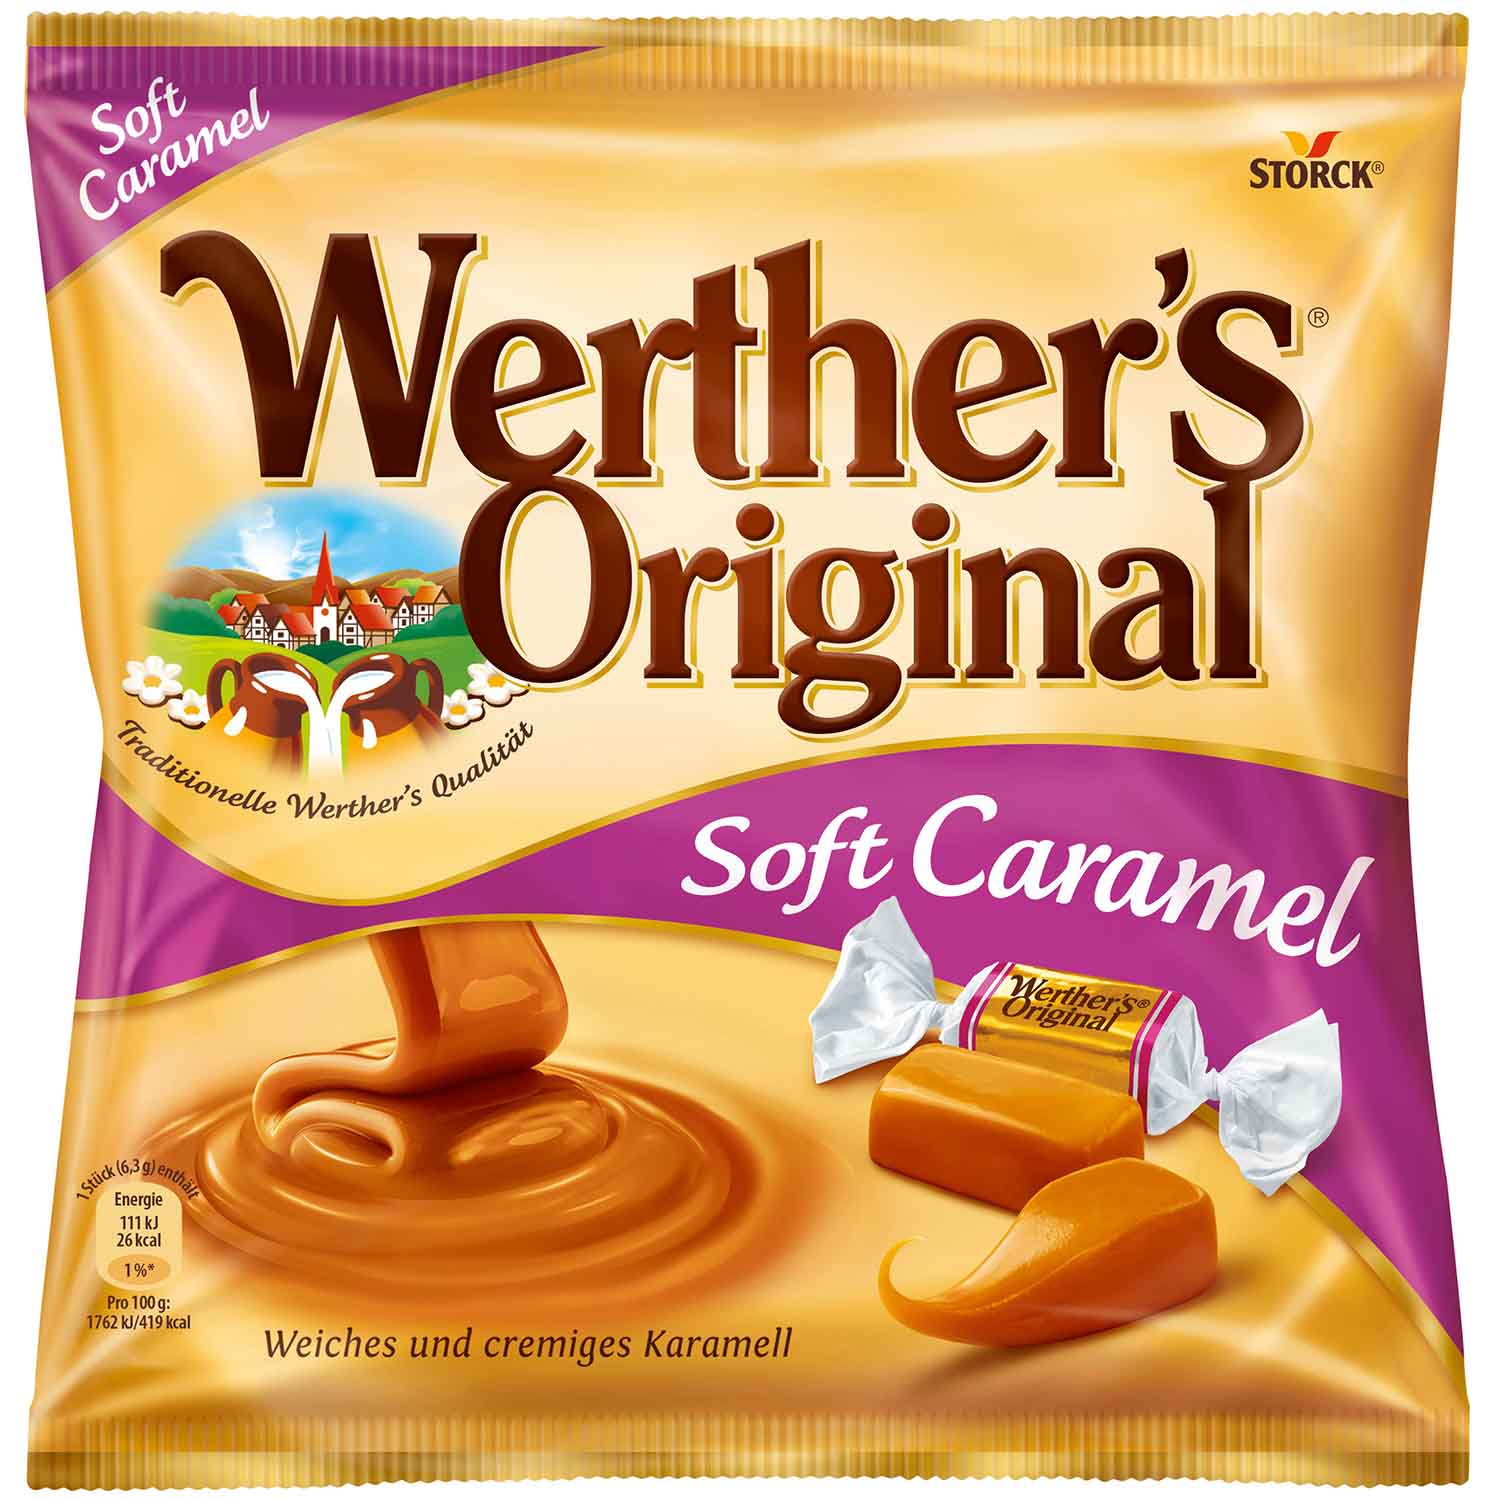 Werther's Original Soft Caramel 180g | Online kaufen im World of Sweets Shop